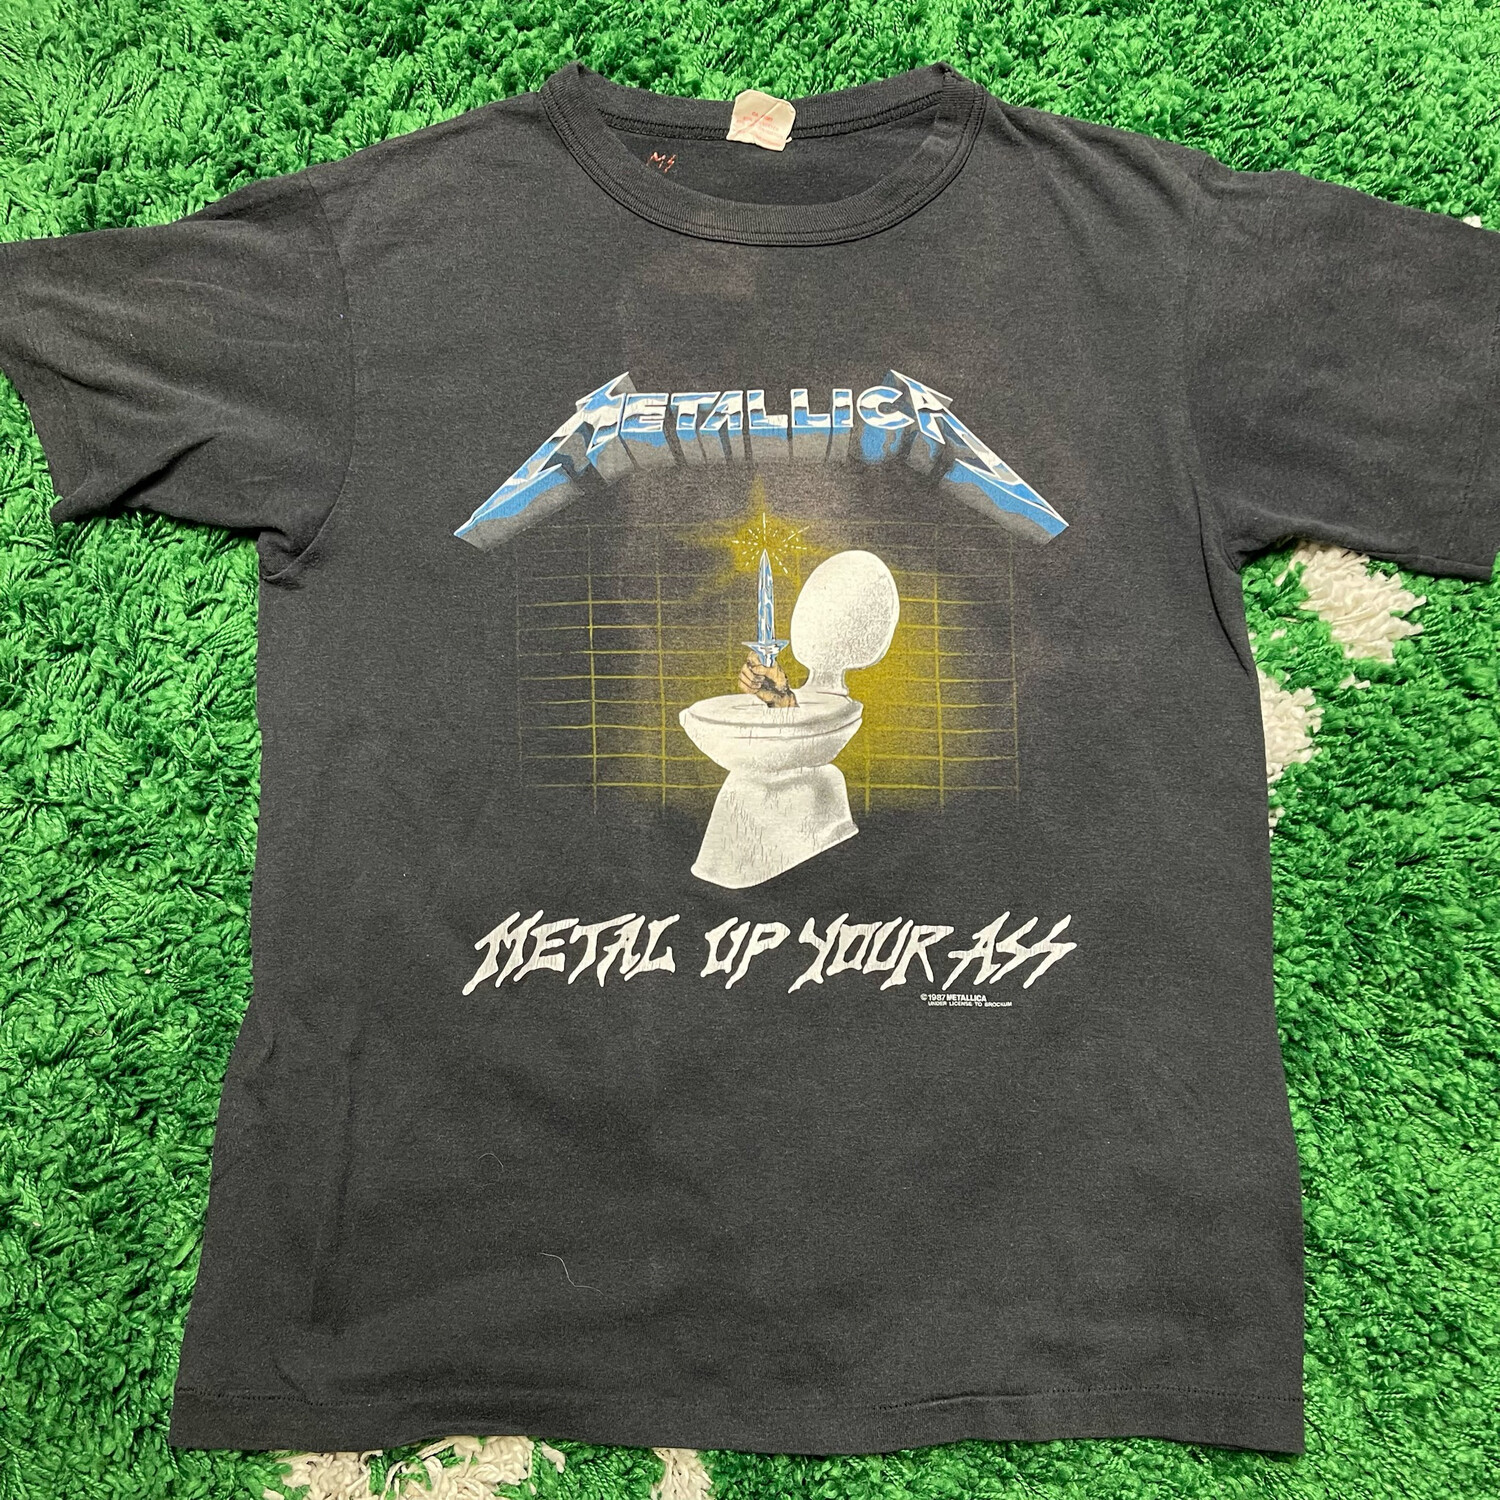 Metallica Metal Up Your Ass 1987 Size Medium